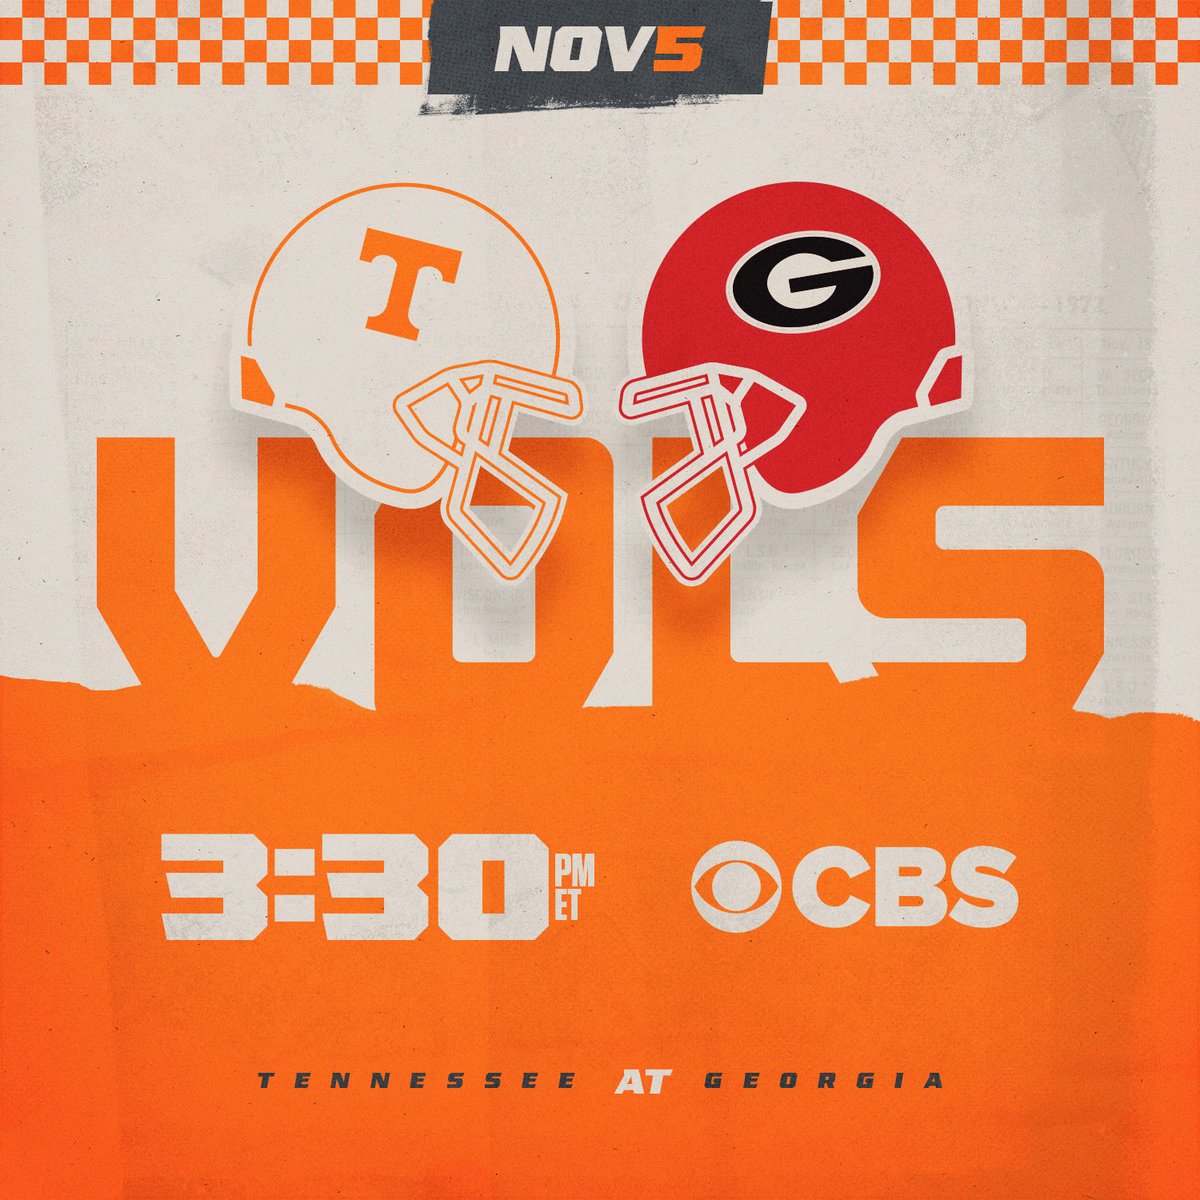 Game time is set! 📅 November 5 📺 CBS ⌚️ 3:30 ET 🏟 Sanford Stadium